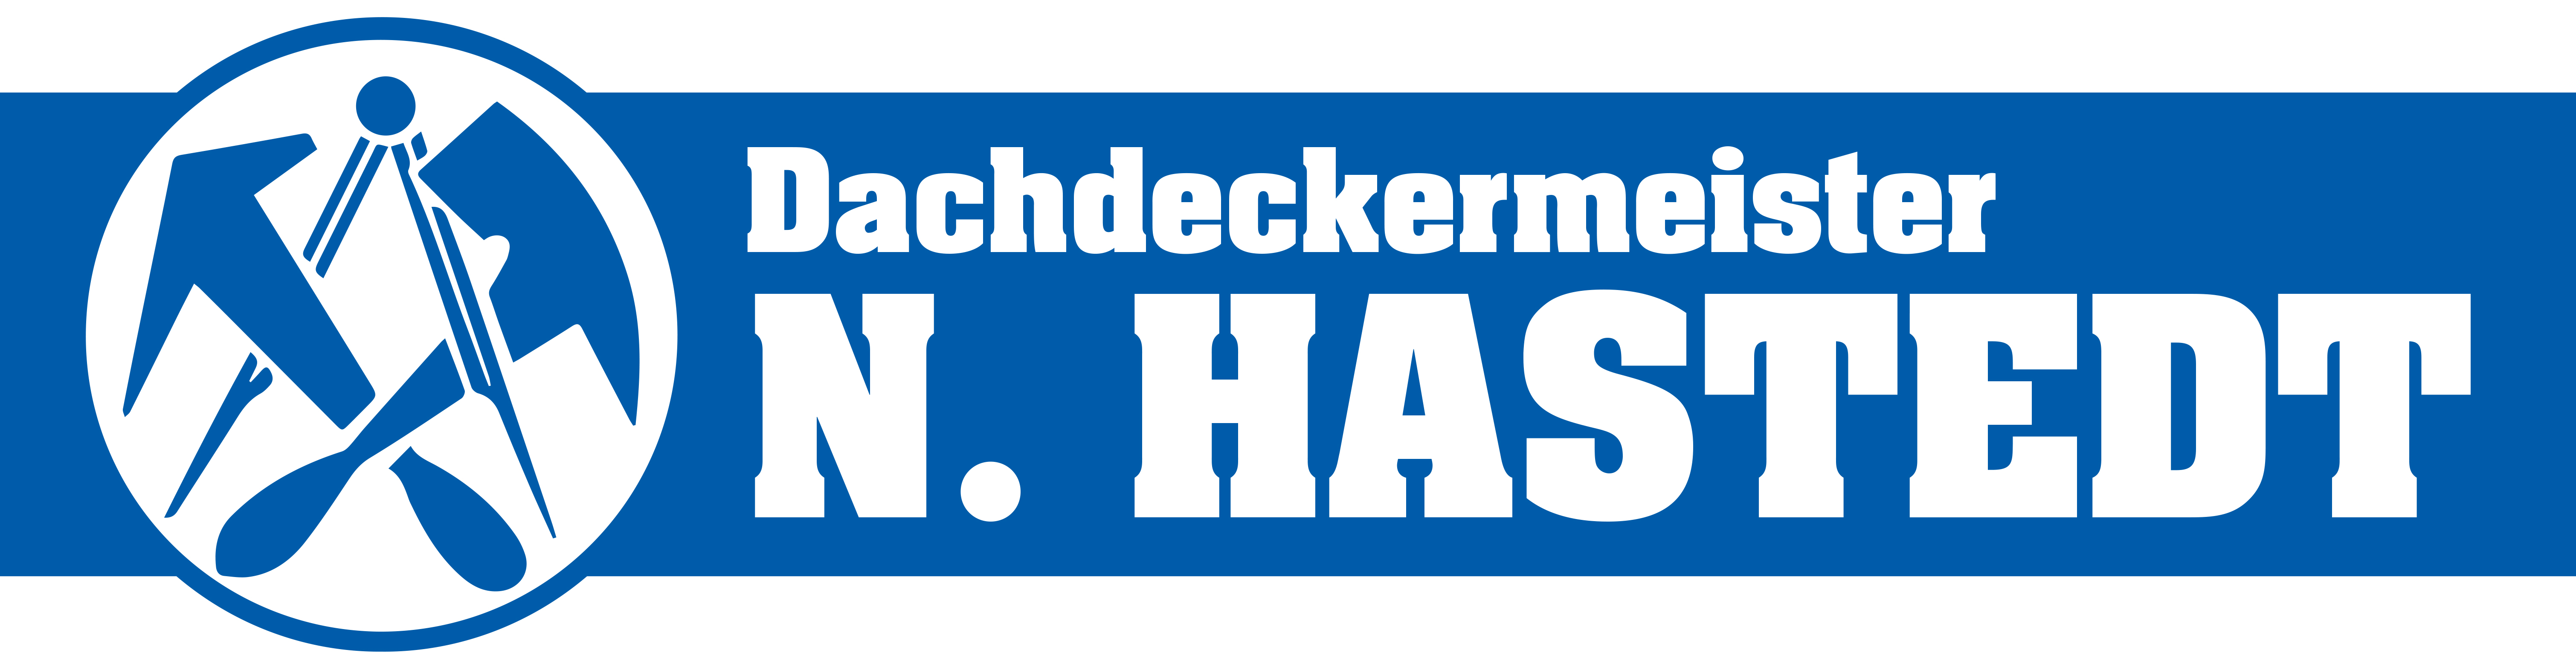 Dachdecker Hastedt